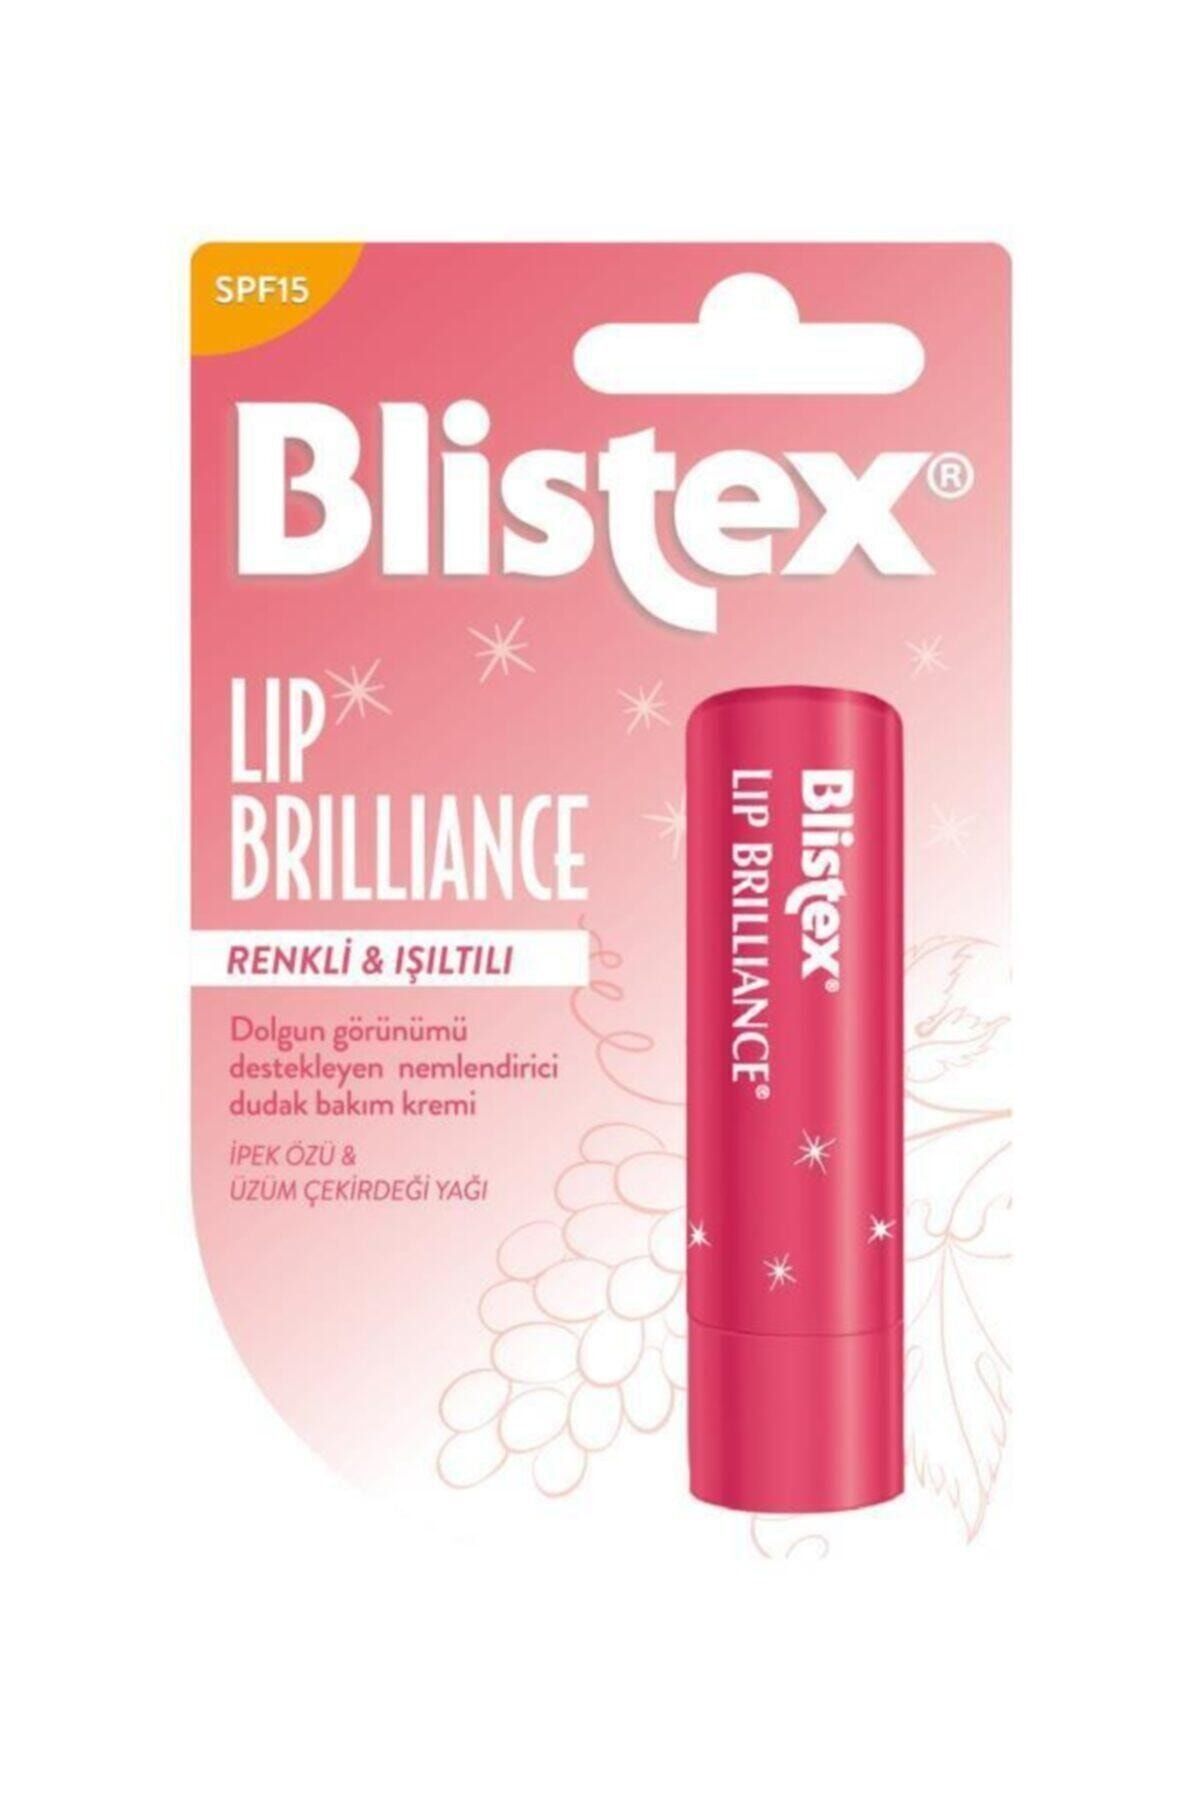 Blistex Lip Brilliance Spf 15 Renk Ve Işıltı Etkili Nemlendirici Dudak Bakım